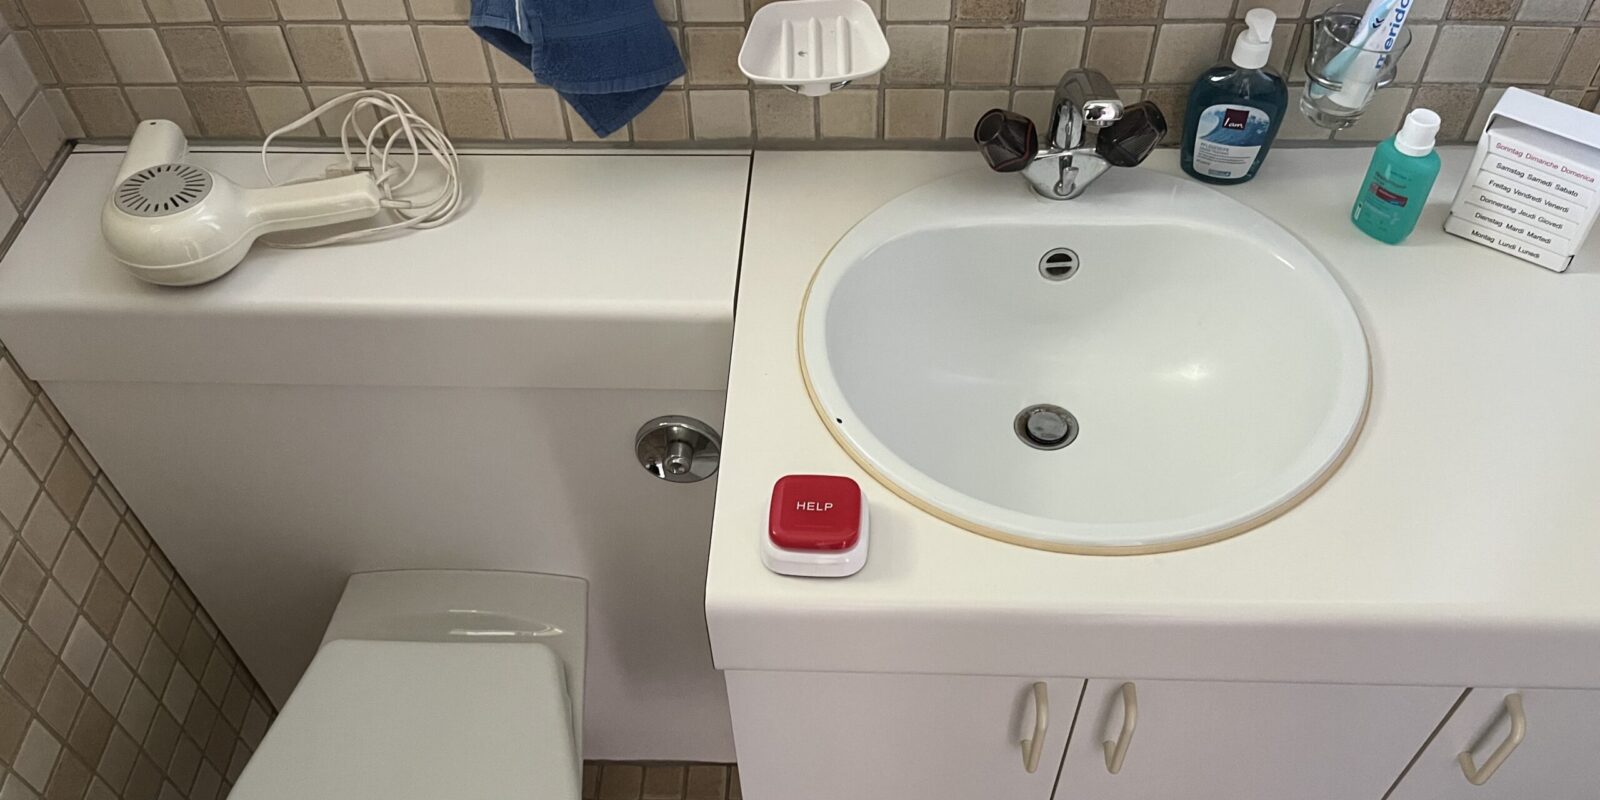 Auch im Badezimmer kann ein Notfallknopf Sicherheit schaffen.